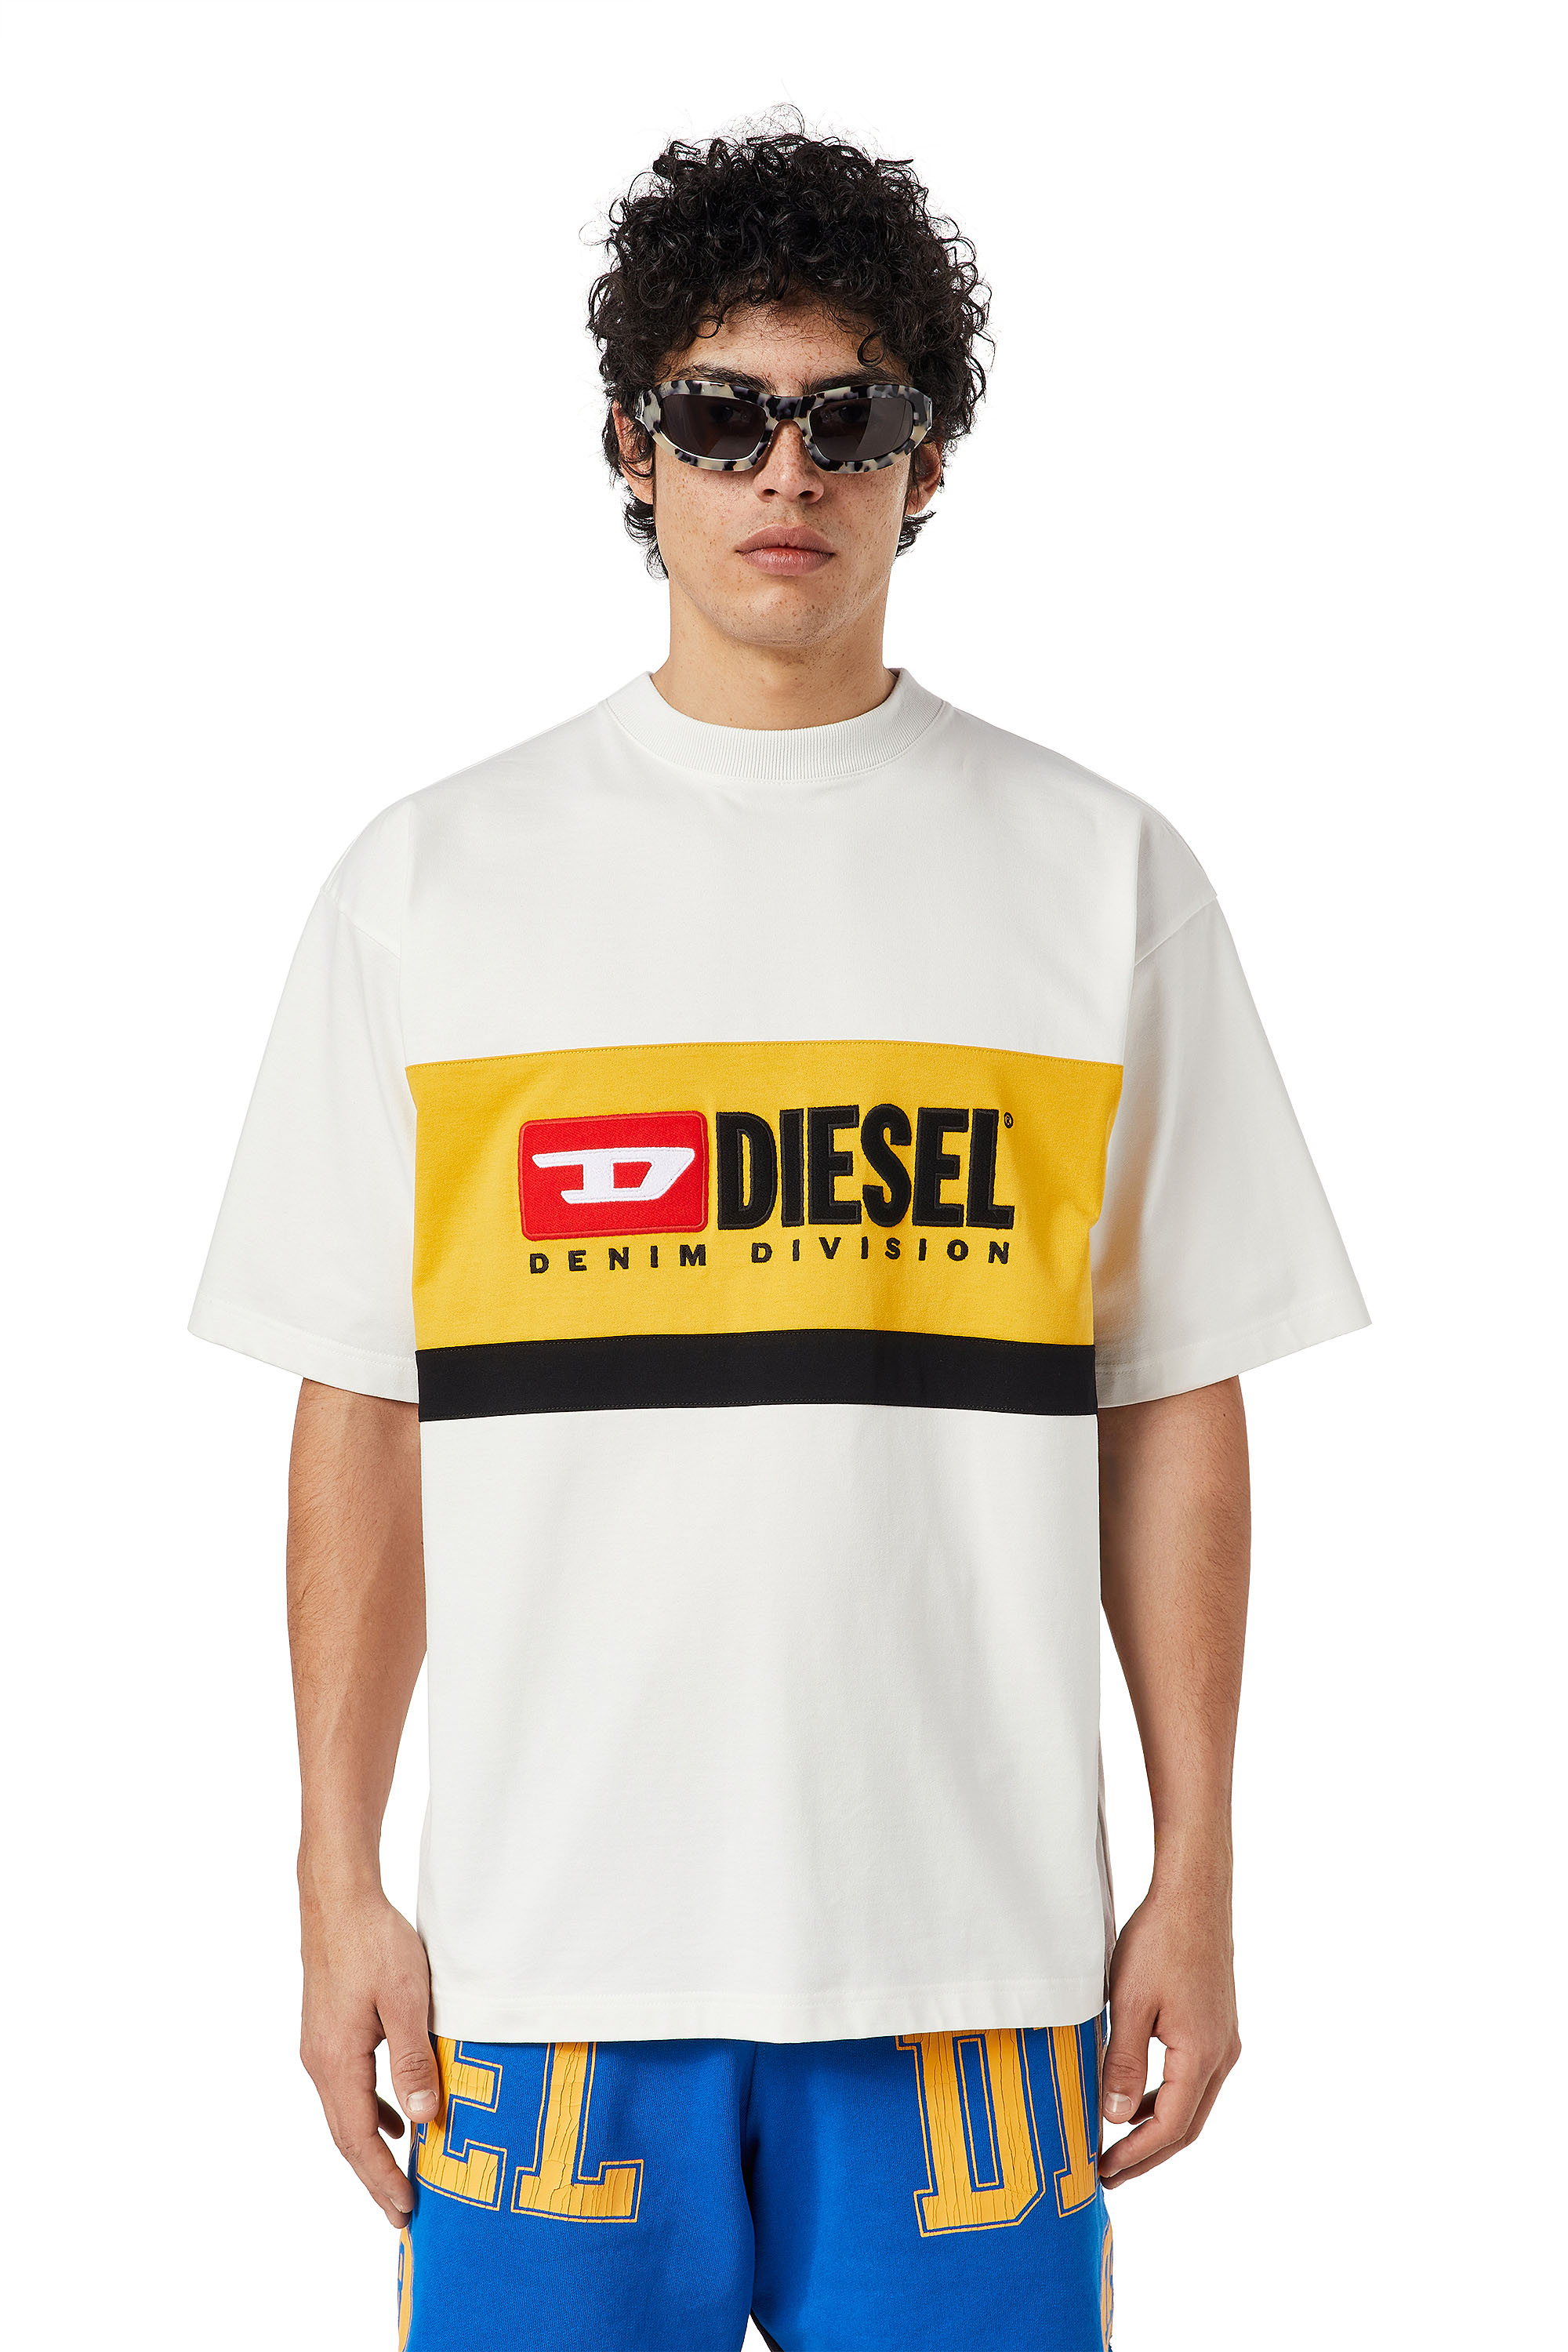 Diesel - T-STREAP-DIVISION, Weiß - Image 1